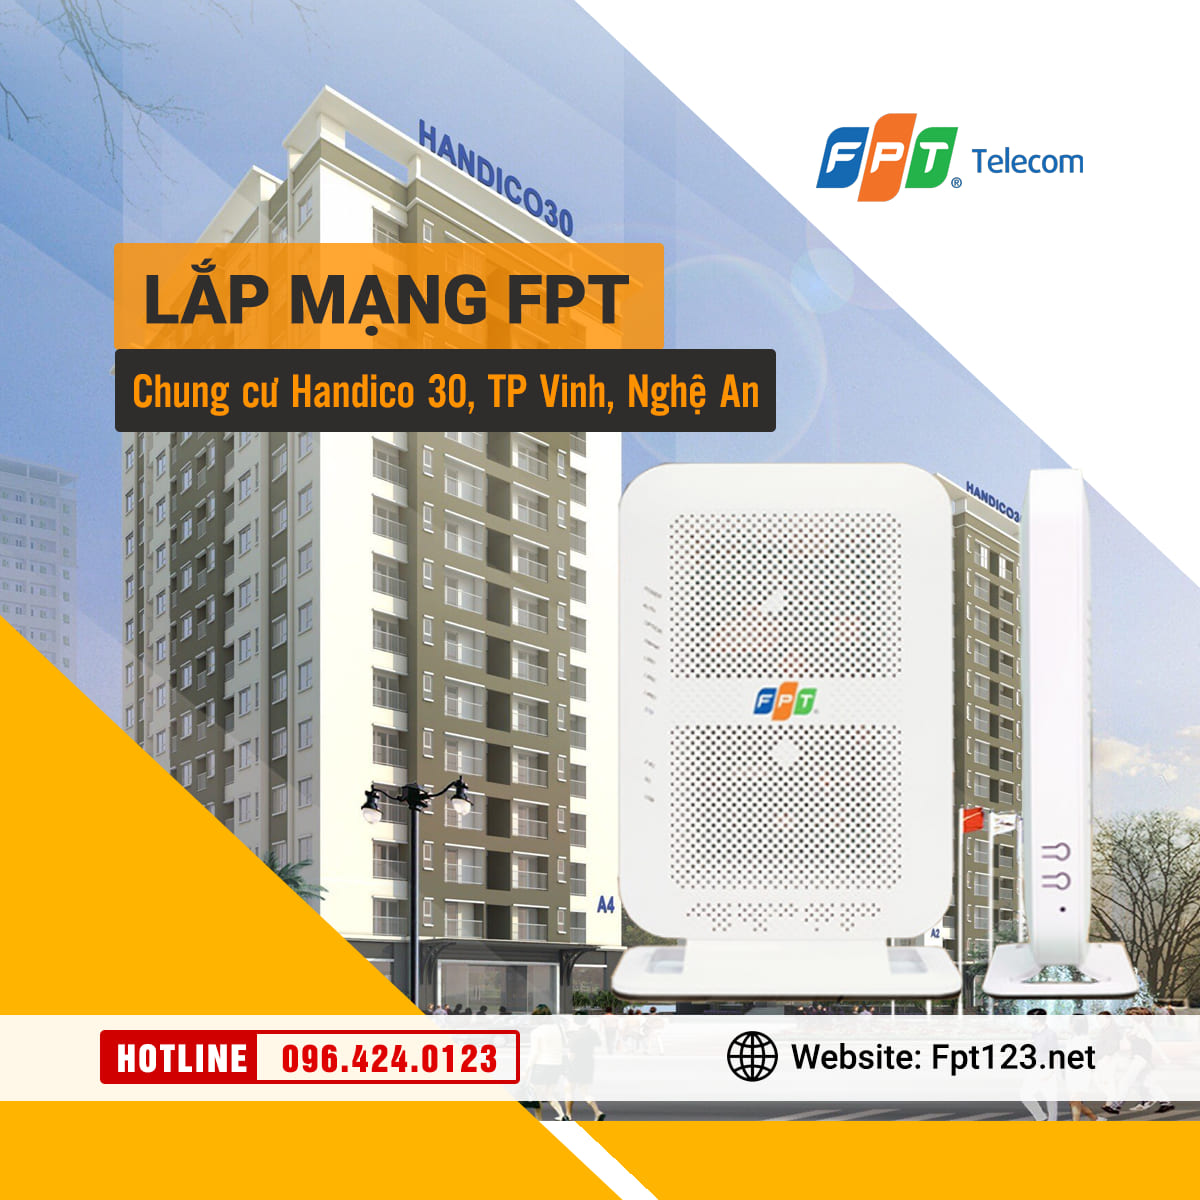 Lắp mạng FPT ở chung cư Handico 30, TP Vinh, Nghệ An